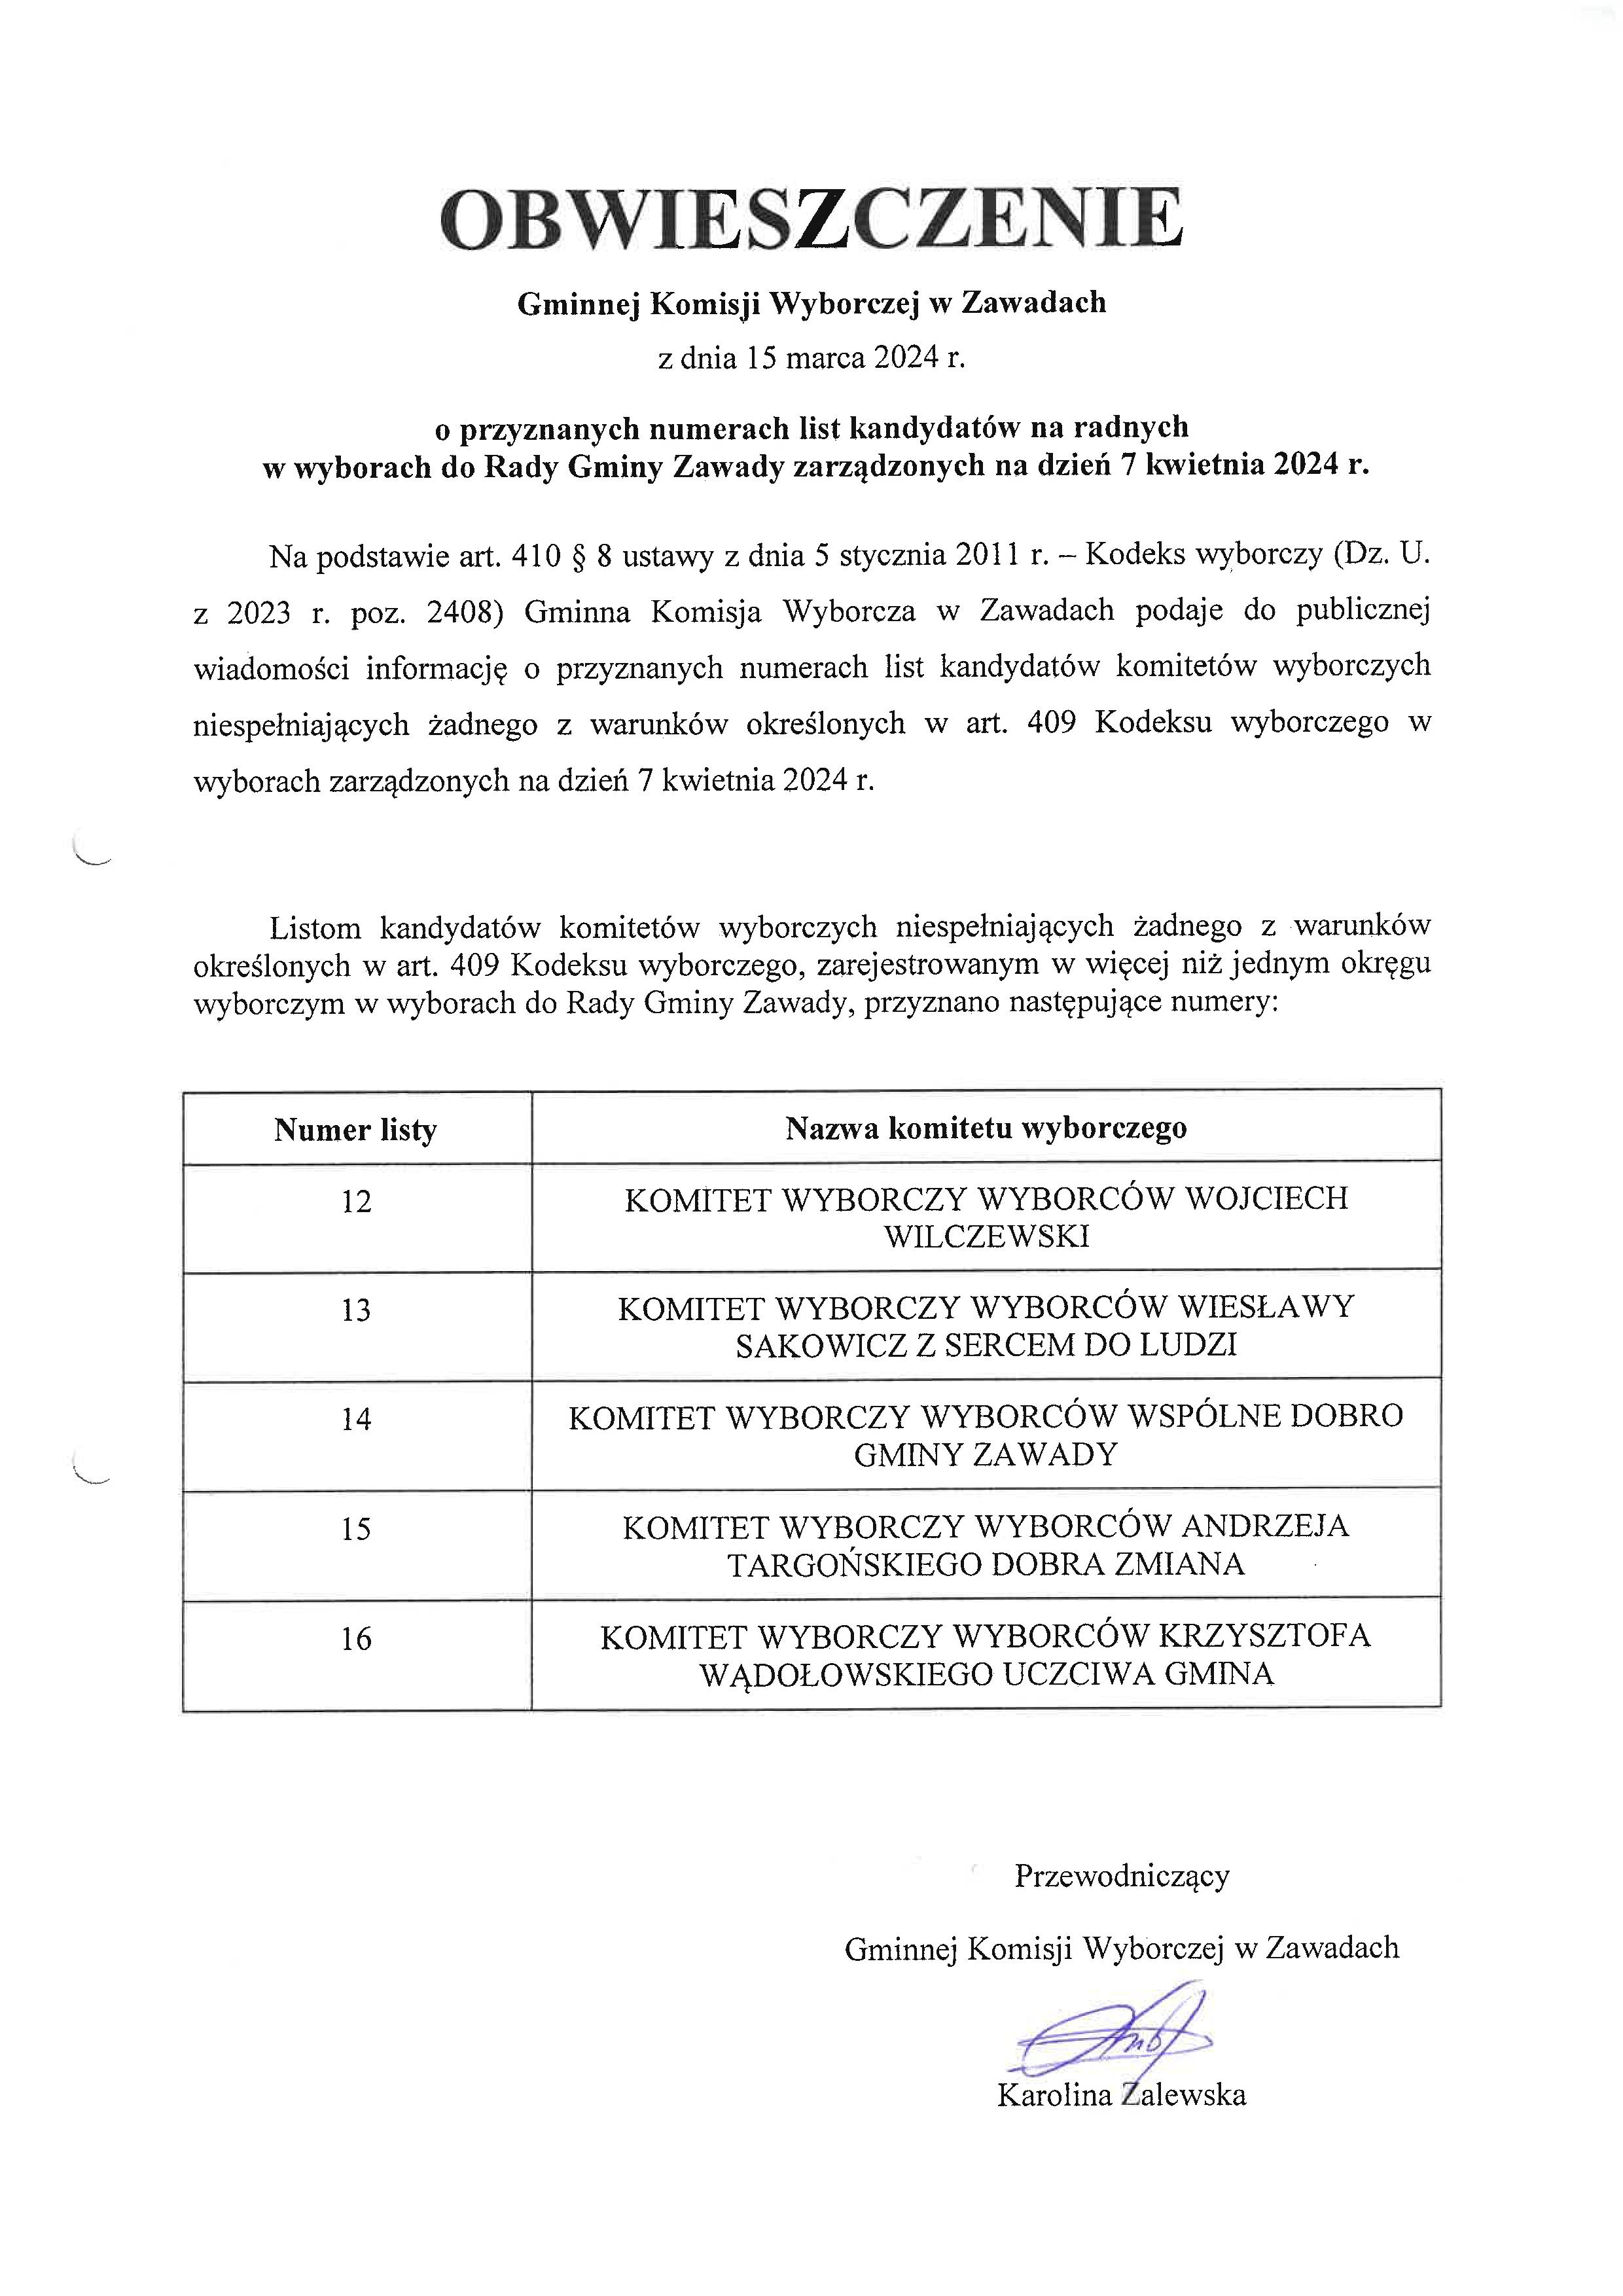 Obwieszczenie GKW w Zawadach o przyznanych numerach list kandydatów na radnych